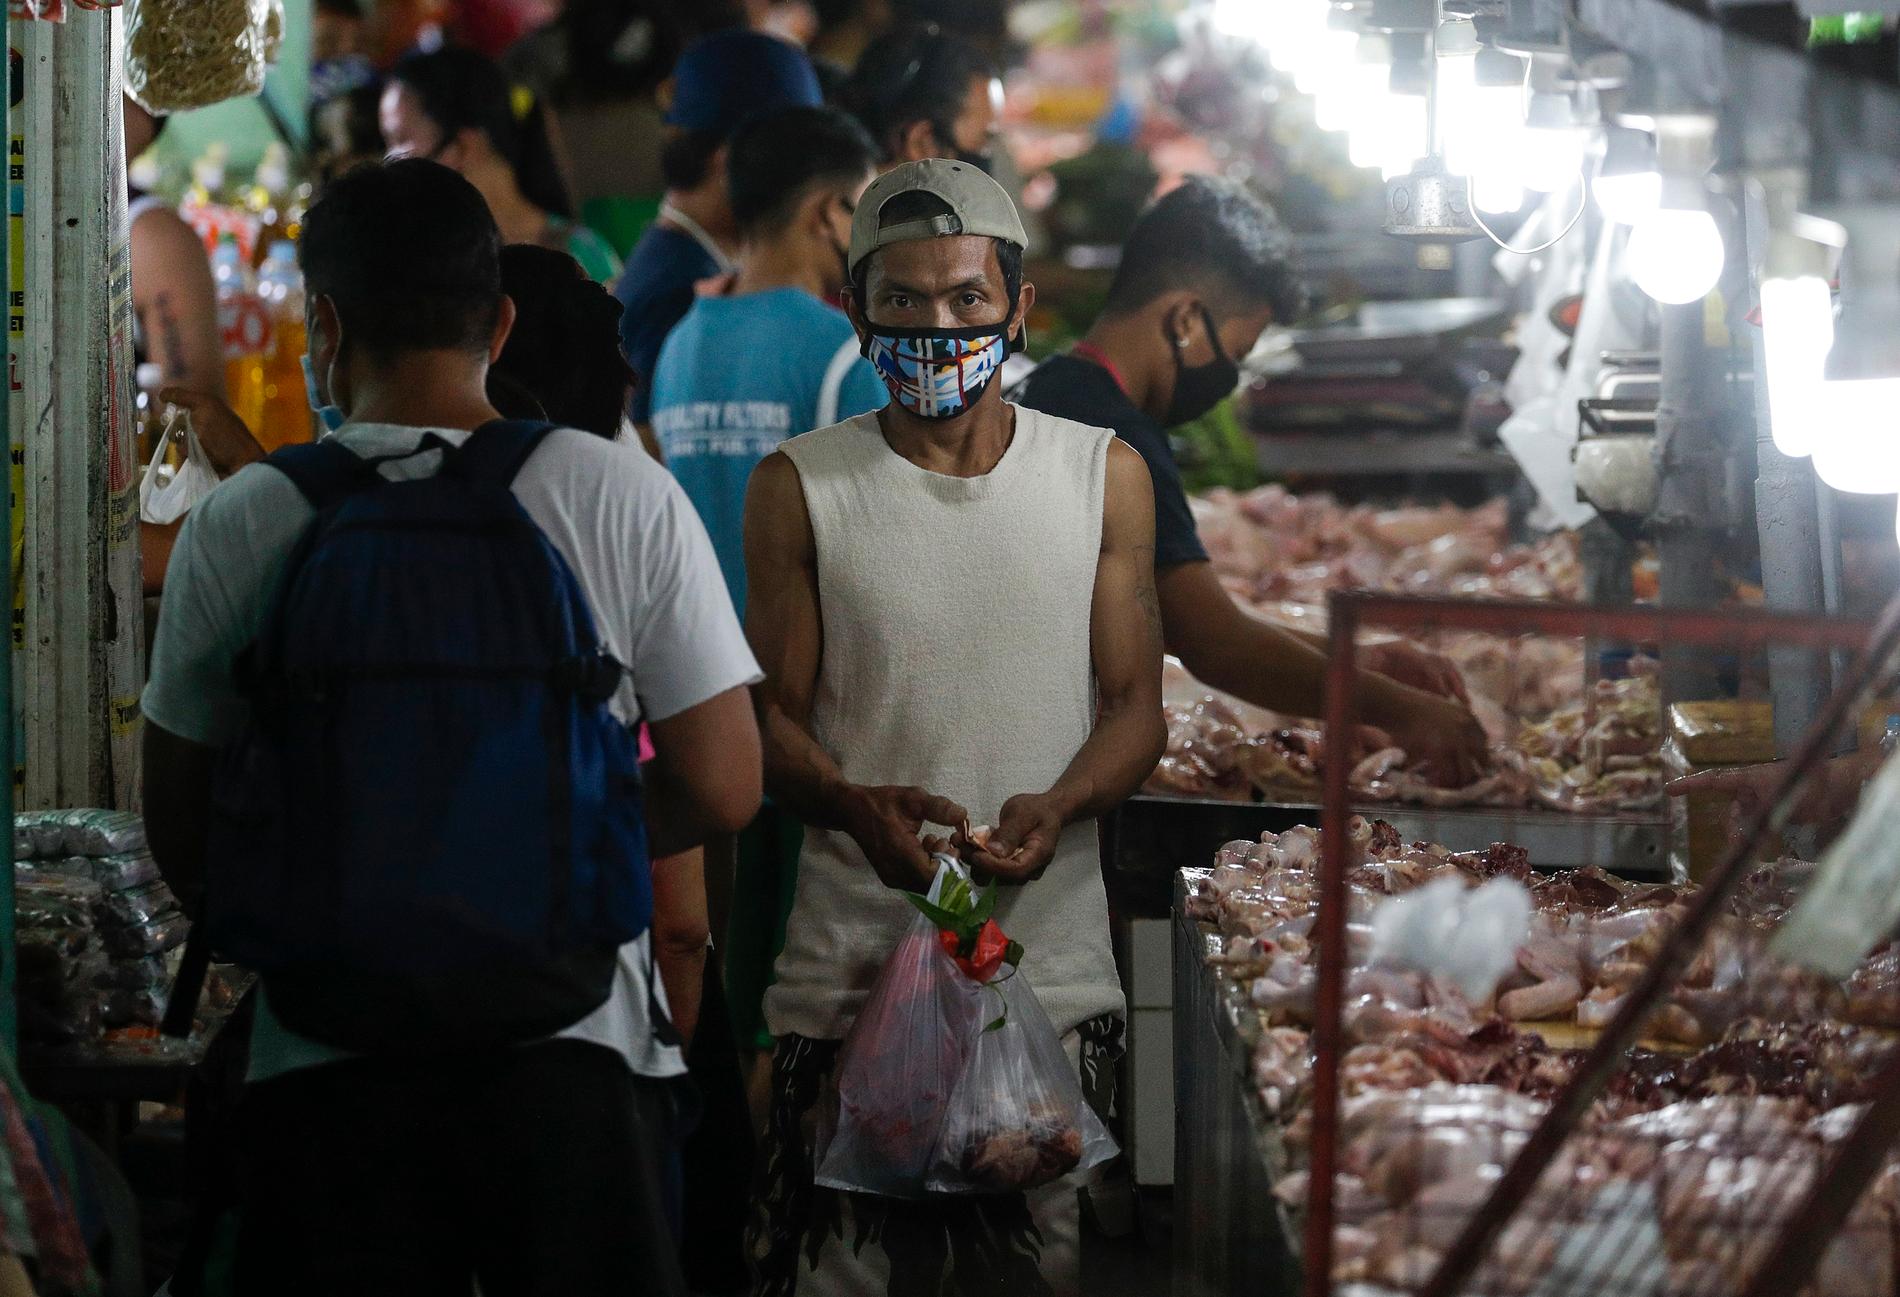 En man bär ansiktsmask på marknaden. Megastäder som filippinska Manila, där människor bor tätt och fattigdomen är utbredd, är en tacksam grogrund för smittspridning.